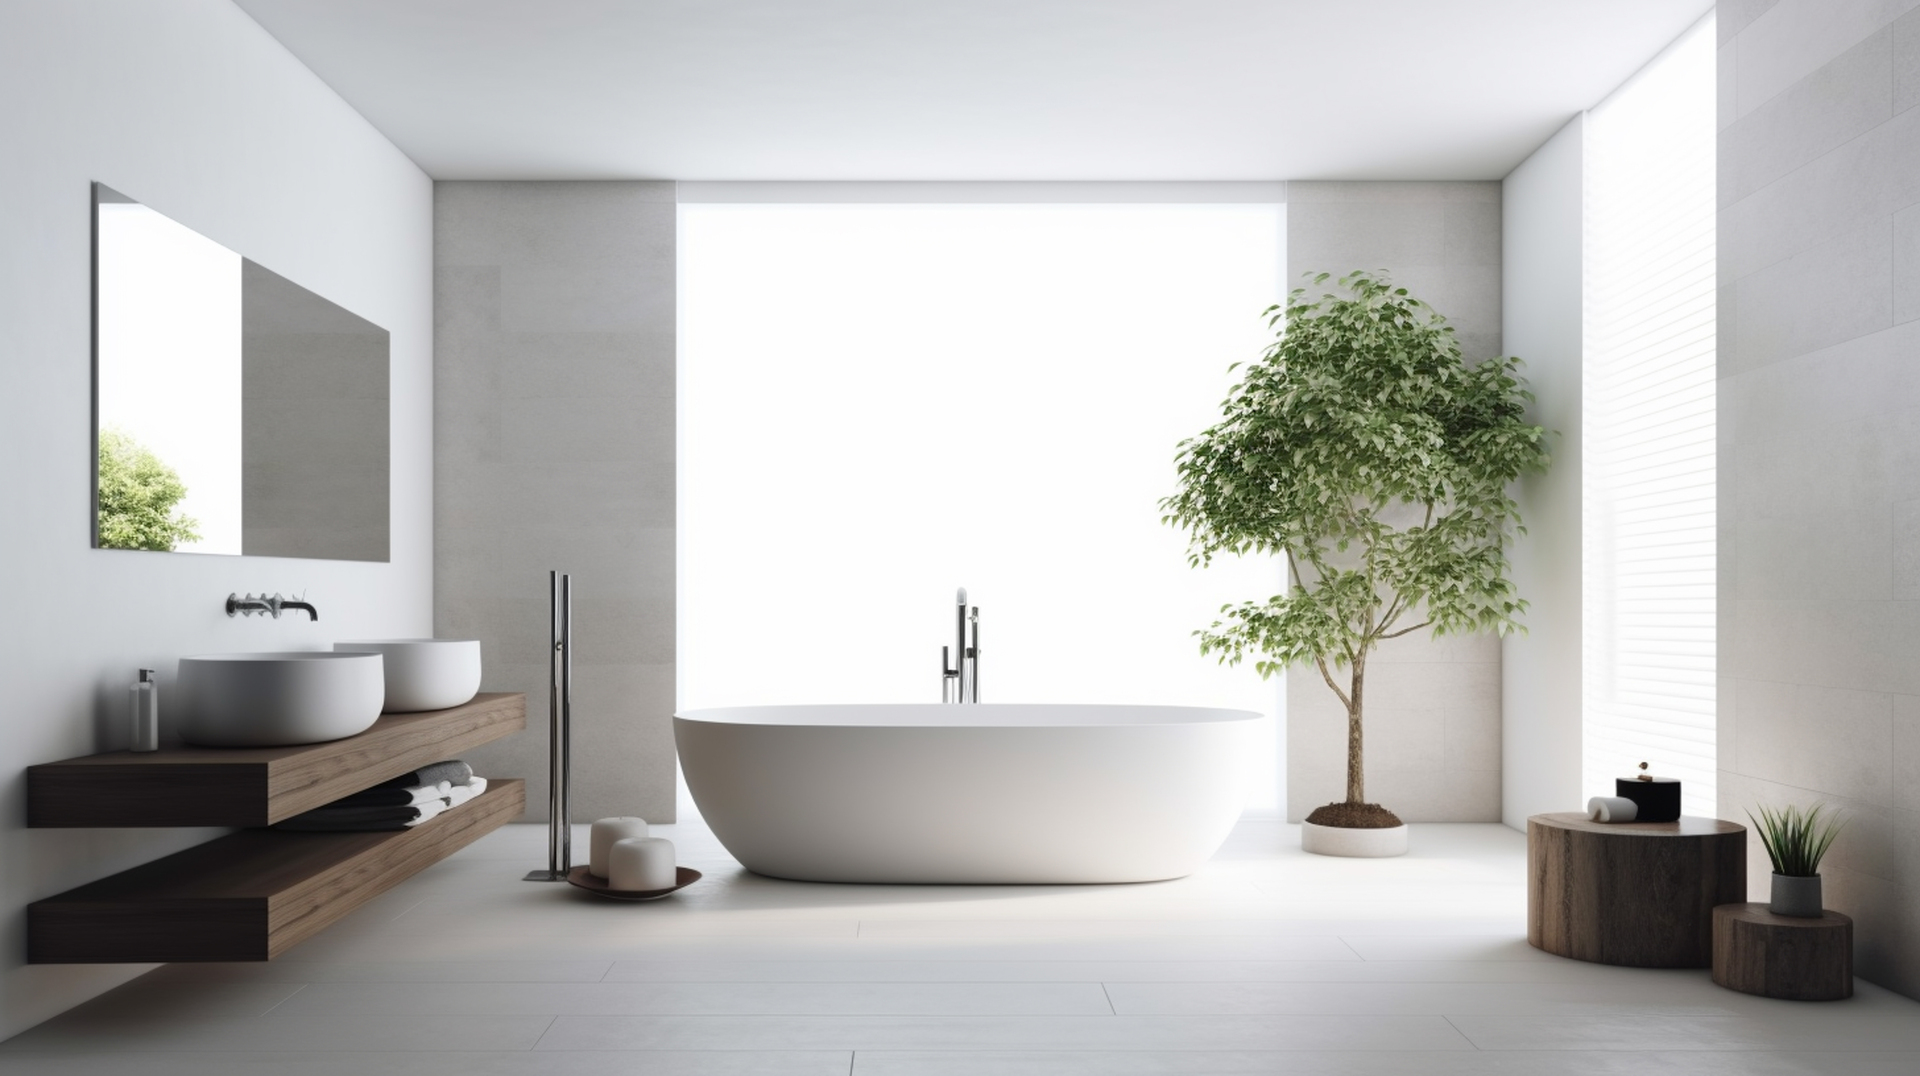 Ten obrazek przedstawia nowoczesną białą łazienkę, która emanuje stylem i funkcjonalnością. Czyste linie i minimalistyczny design tworzą nowatorskie i eleganckie wnętrze. Jasne odcienie białego w połączeniu z chromowanymi elementami nadają przestrzeni nowoczesny i świeży wygląd. To idealne miejsce do wypoczynku, gdzie można cieszyć się harmonią i komfortem w minimalistycznym otoczeniu